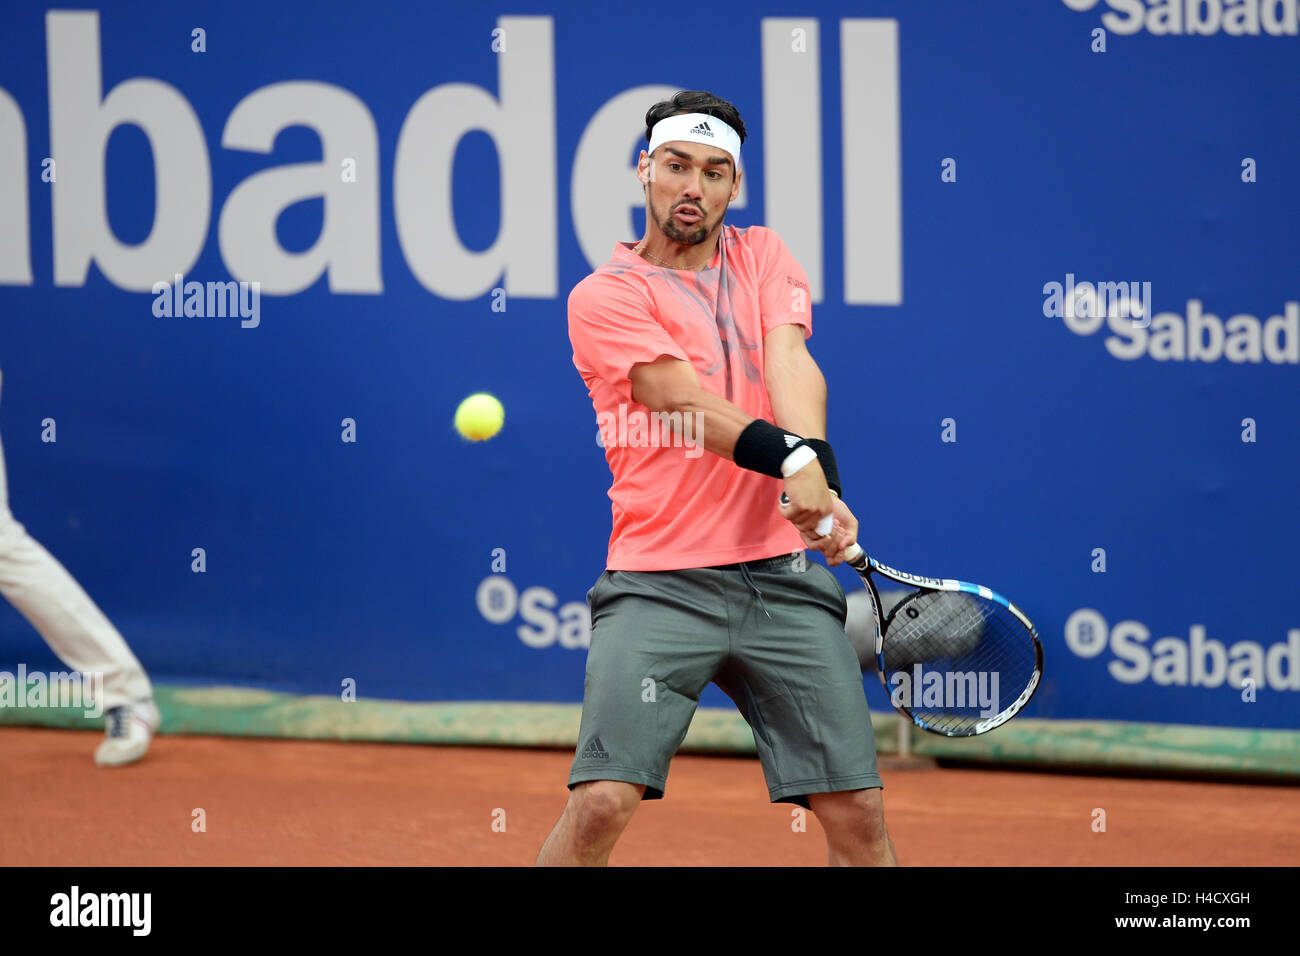 Barcelone - APR 24 : Fabio Fognini (joueur de tennis) joue à l'ATP Open de Barcelone Banc Sabadell Conde de Godo tournam Banque D'Images